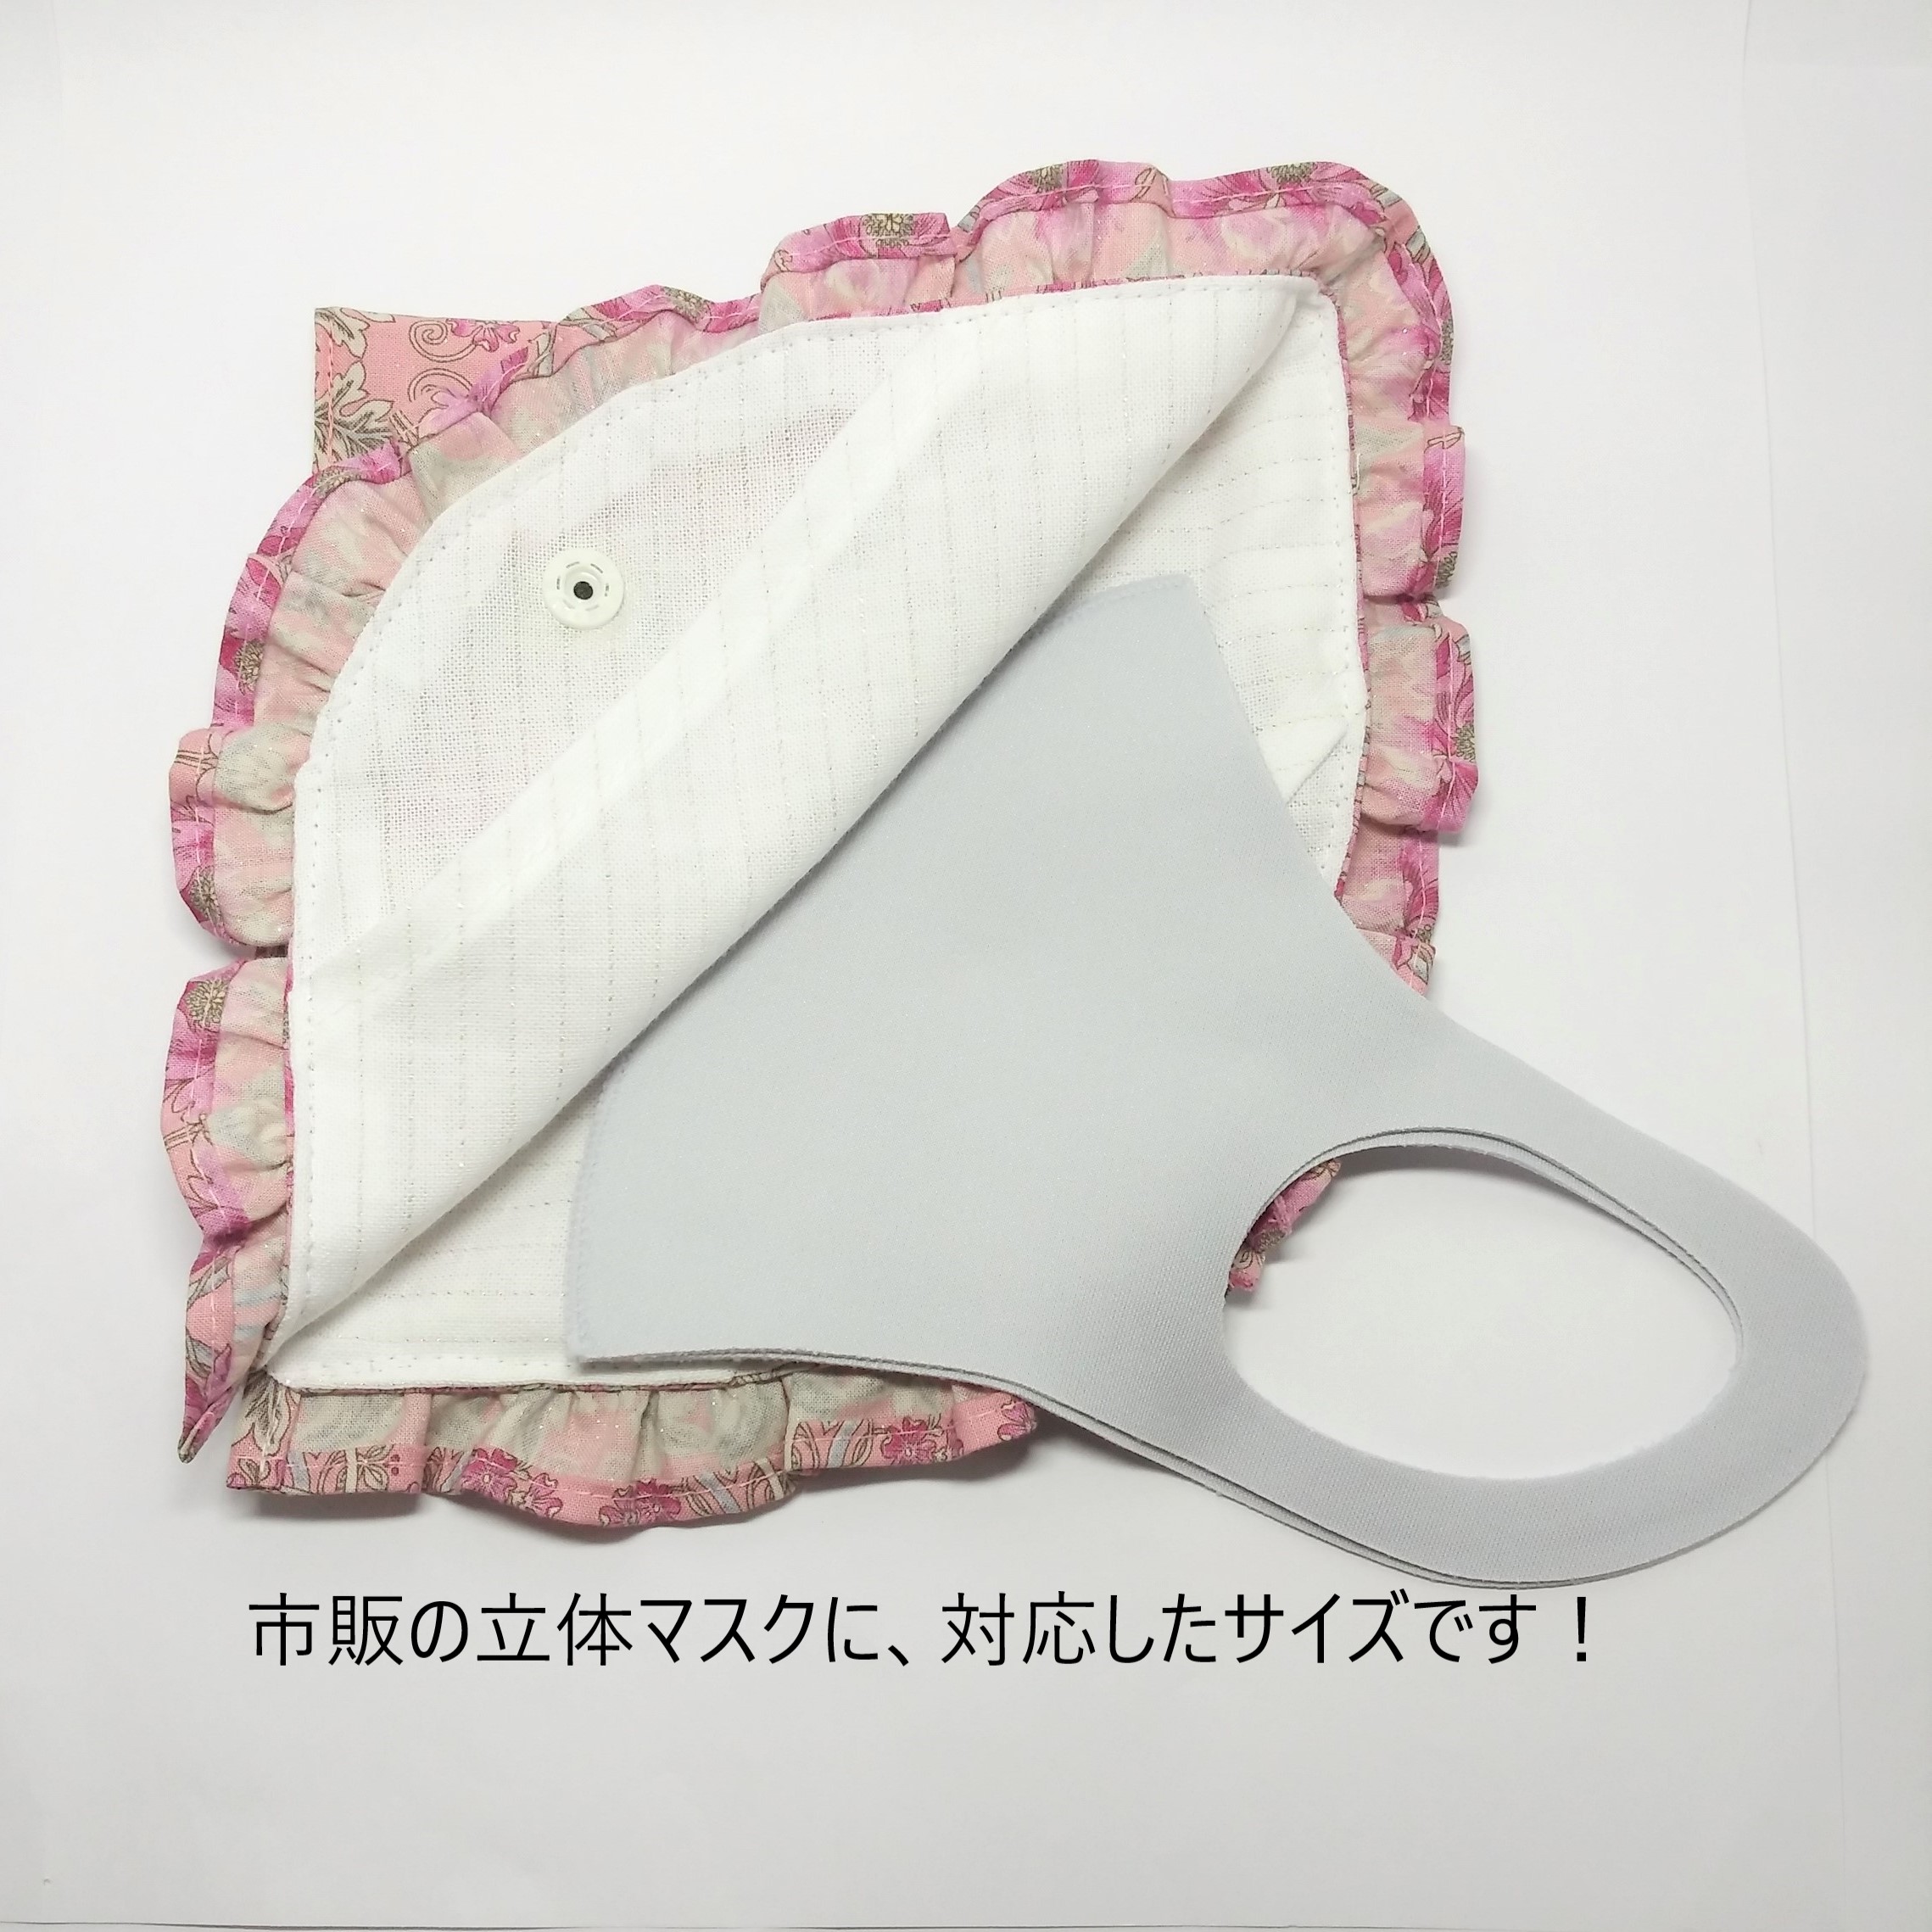 送料無料 立体マスクケース 抗菌布 くすみピンク フリル 花柄 Iichi ハンドメイド クラフト作品 手仕事品の通販